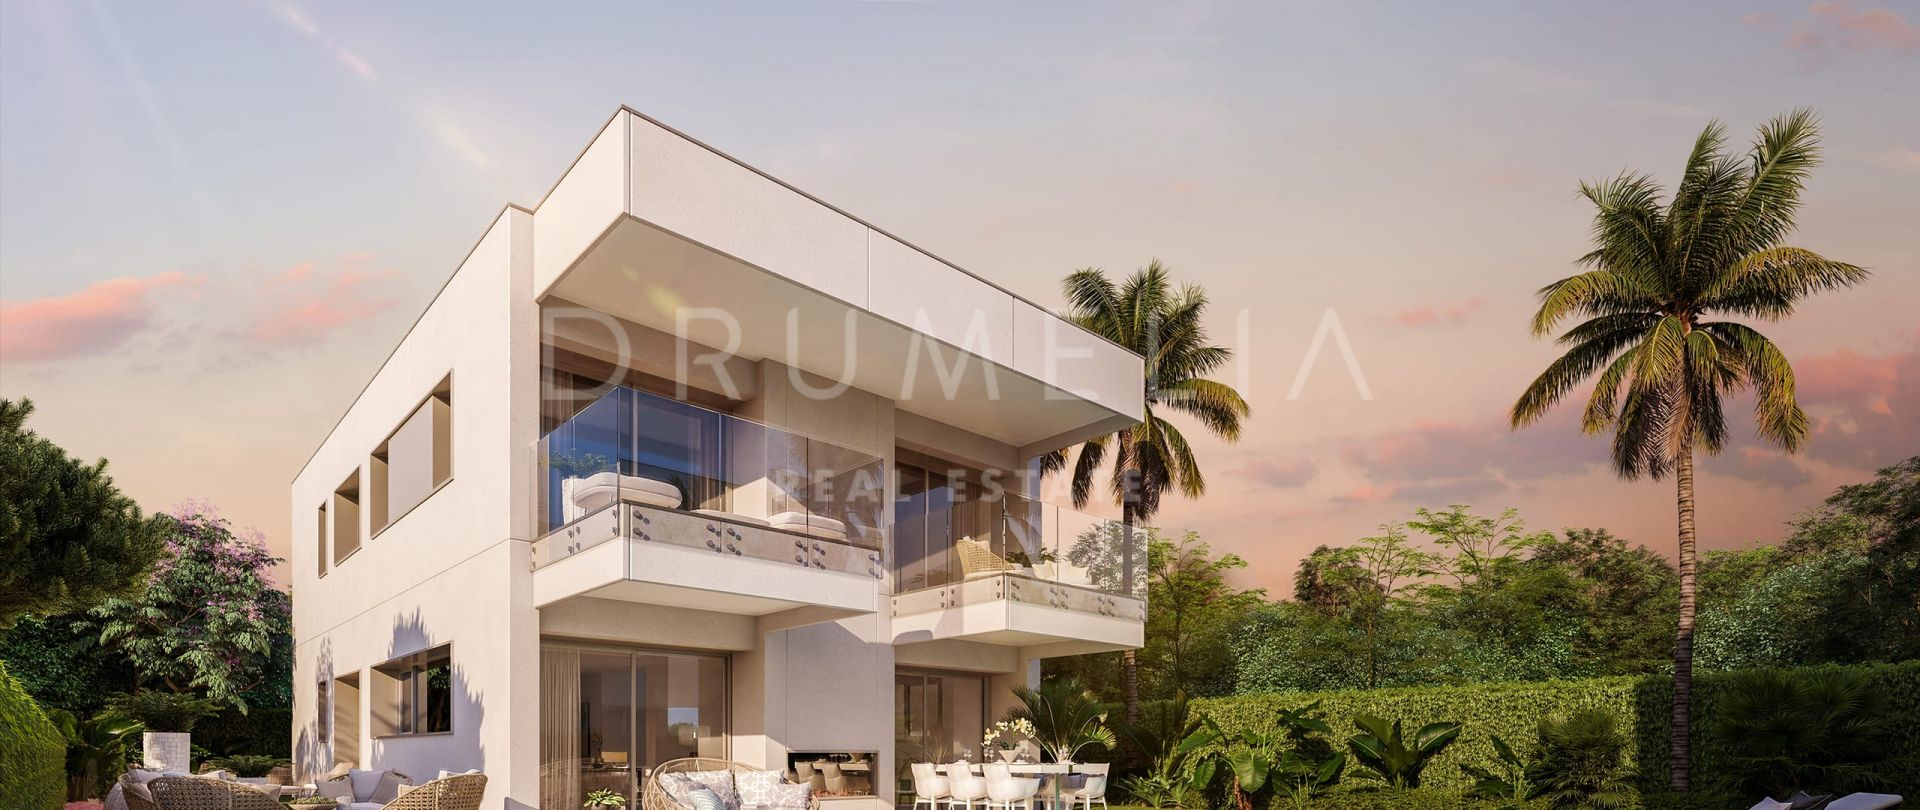 Fabulosa Villa en estilo contamporraneo en 3 niveles en San Pedro Playa